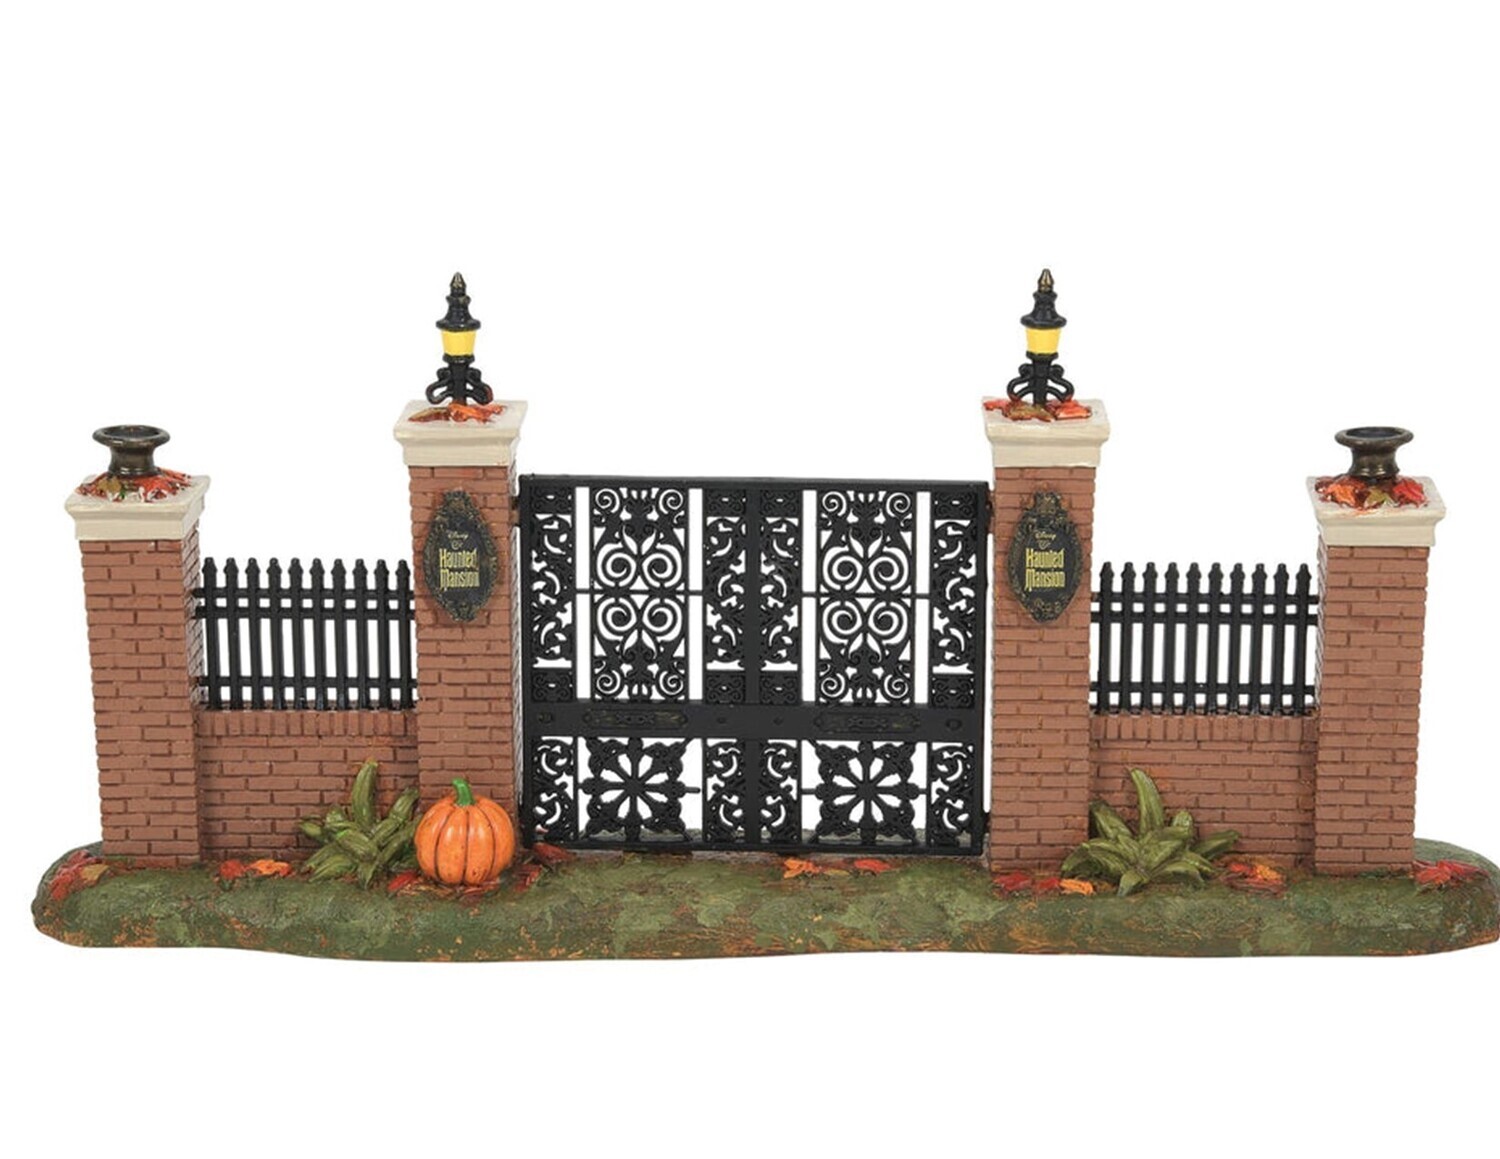 Department 56 Disney's Halloween Village "Haunted Mansion Gate" (6010468)